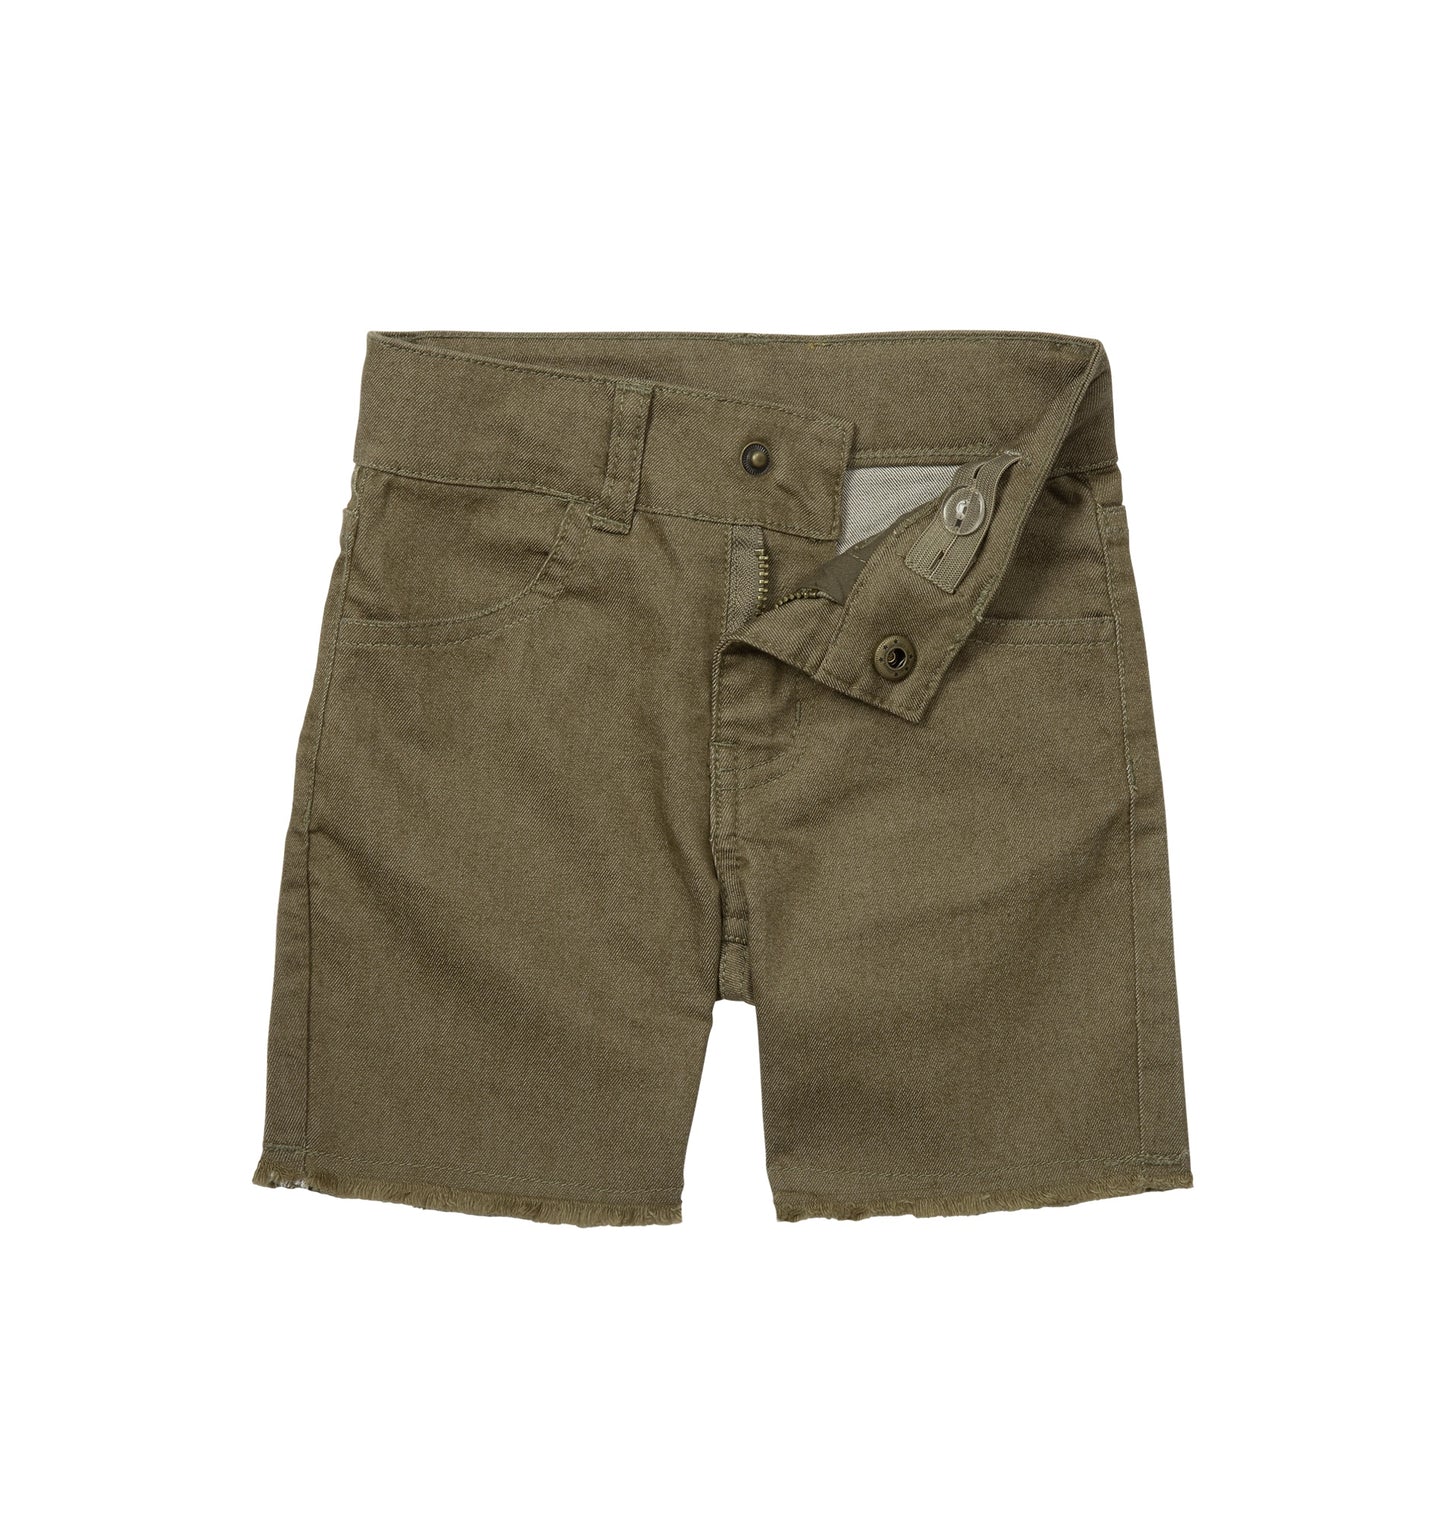 Waco Shorts - Army